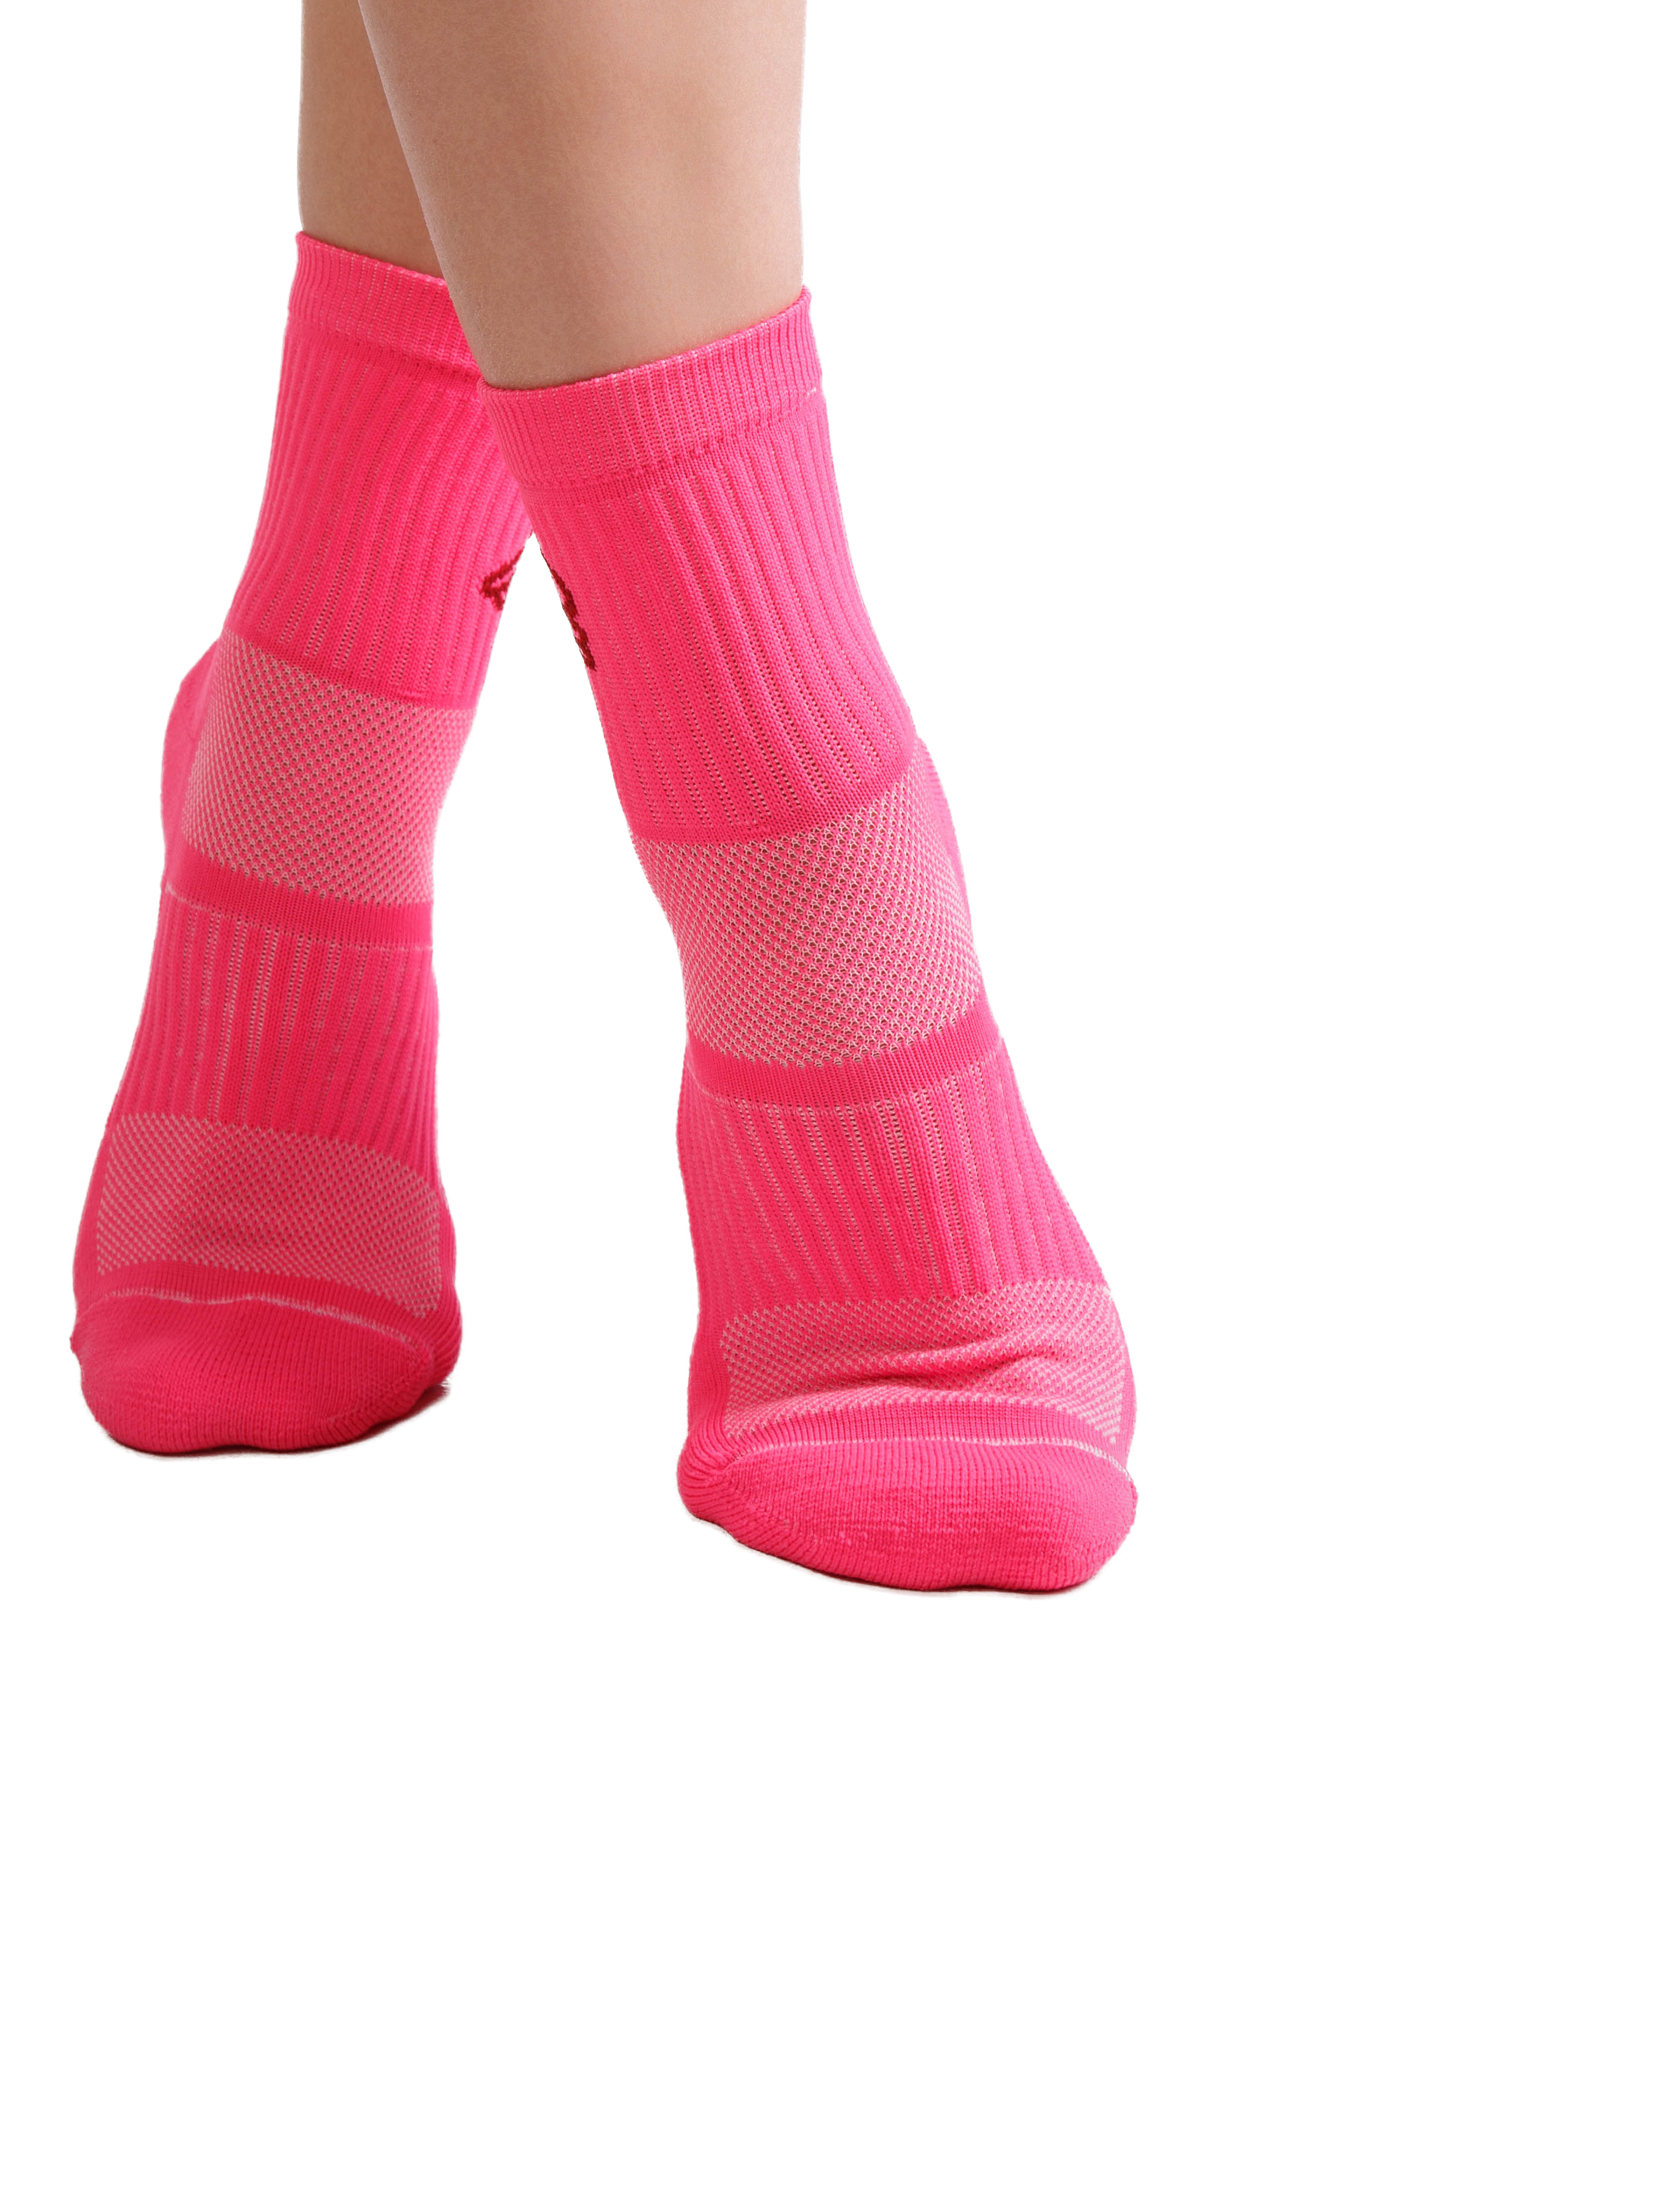 Спортивные носки с компрессионным эффектом SOC-06.0